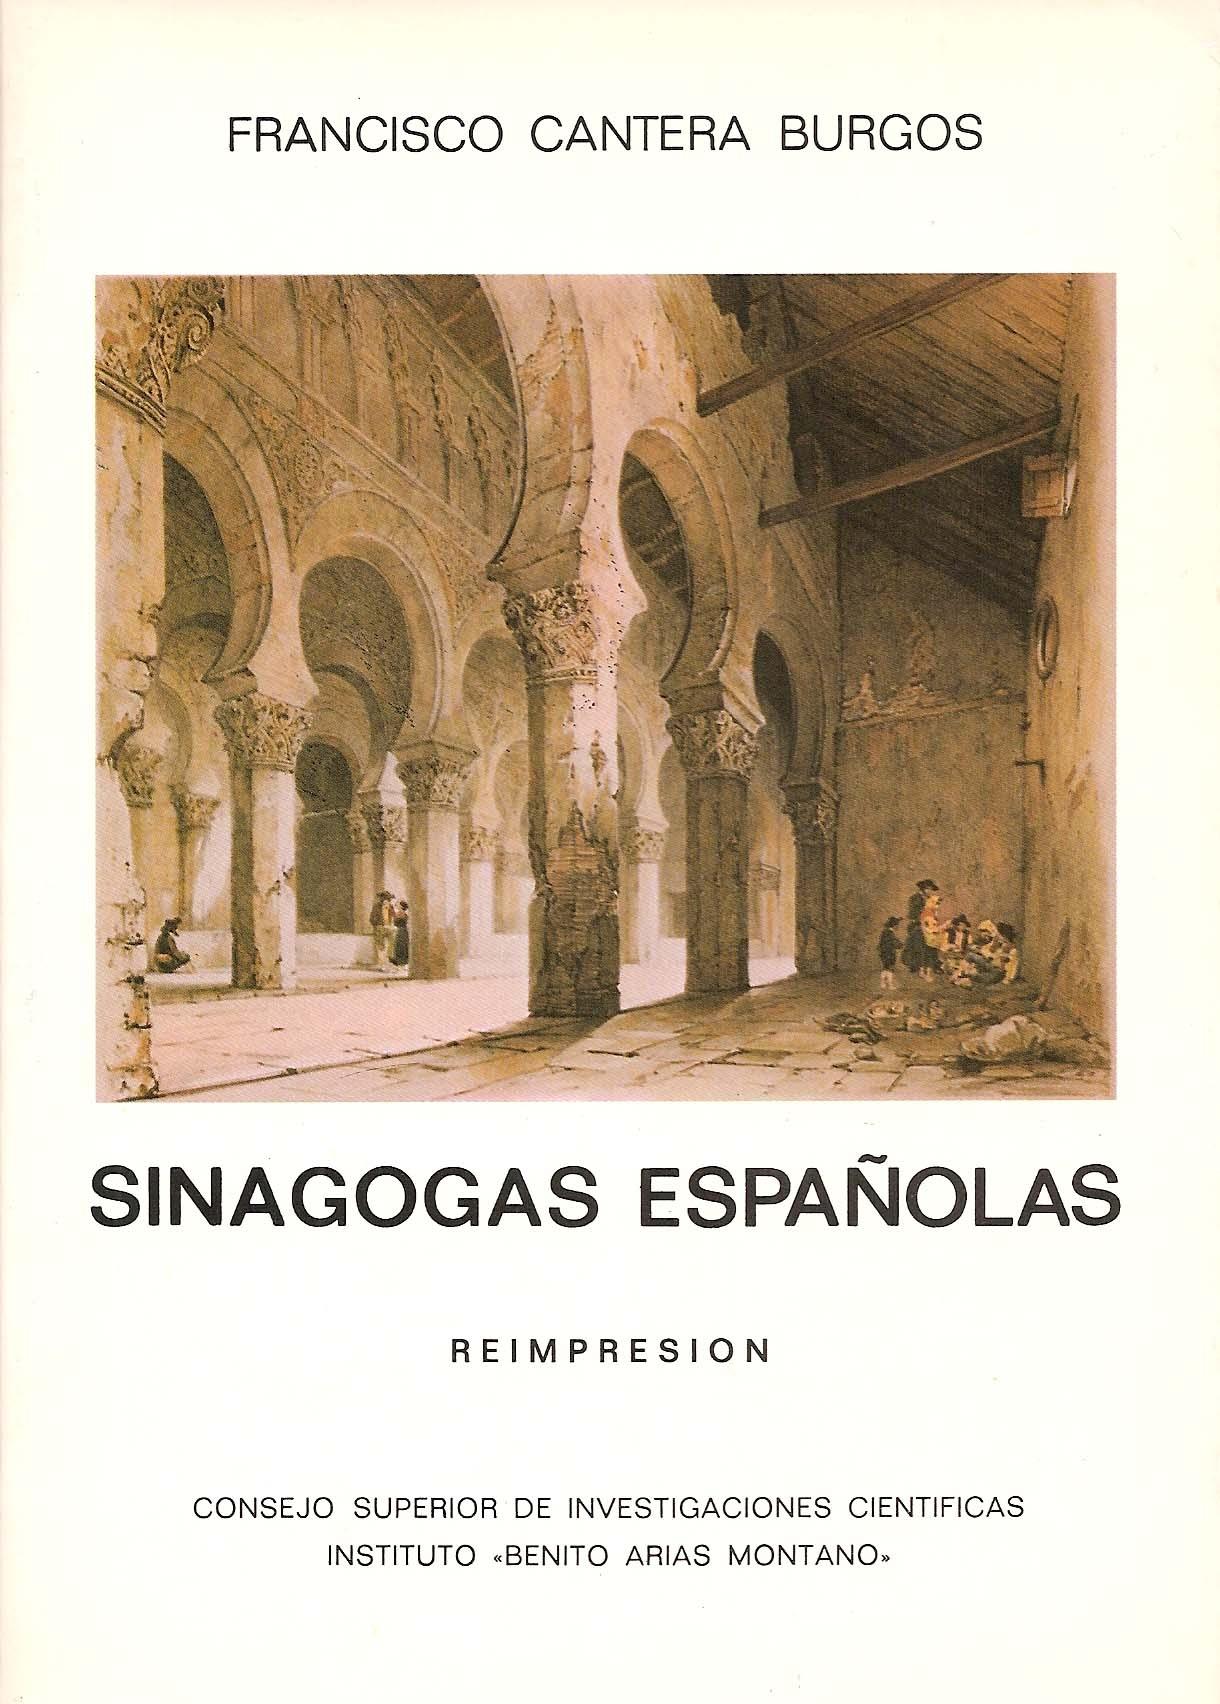 Sinagogas españolas "Con especial estudio de la de Córdoba y la toledana de El Tránsito"